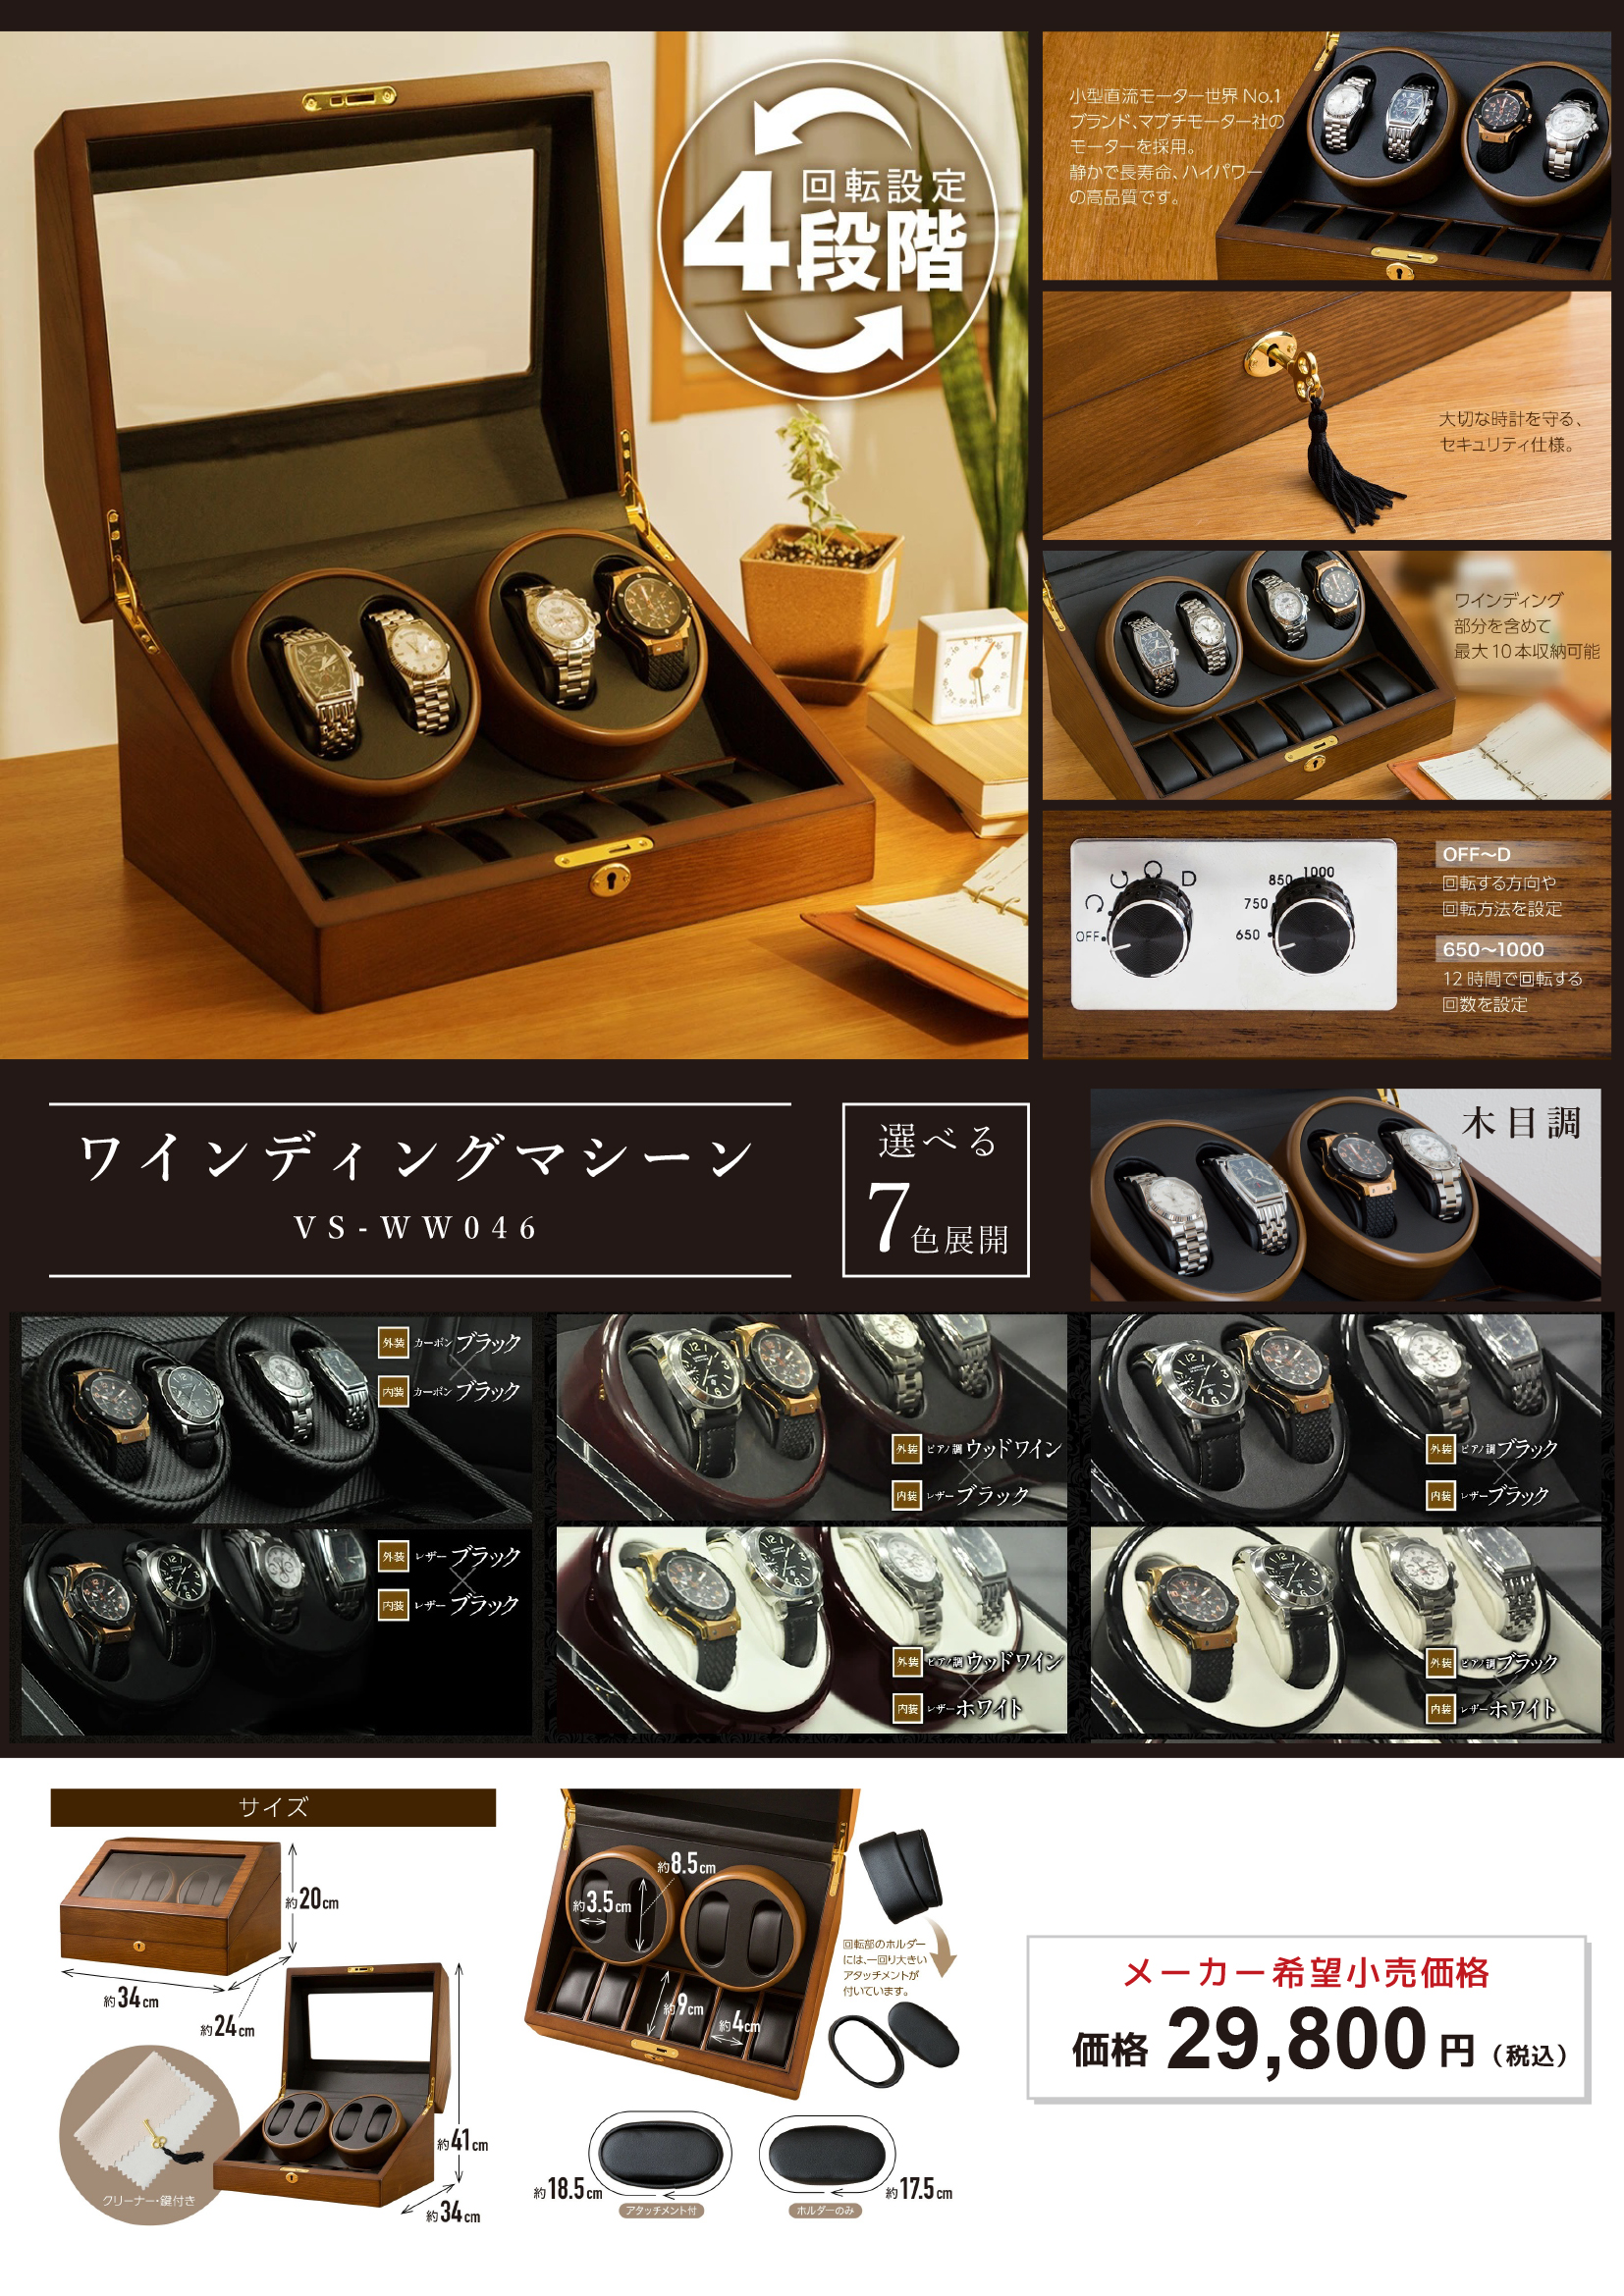 195743円 【正規逆輸入品】 自動ウォッチ ワインダー ボックス 4 つの時計 5 つの収納位置 タッチ LCD デジタル ディスプレイ 静かな MotorHoliday Gift B